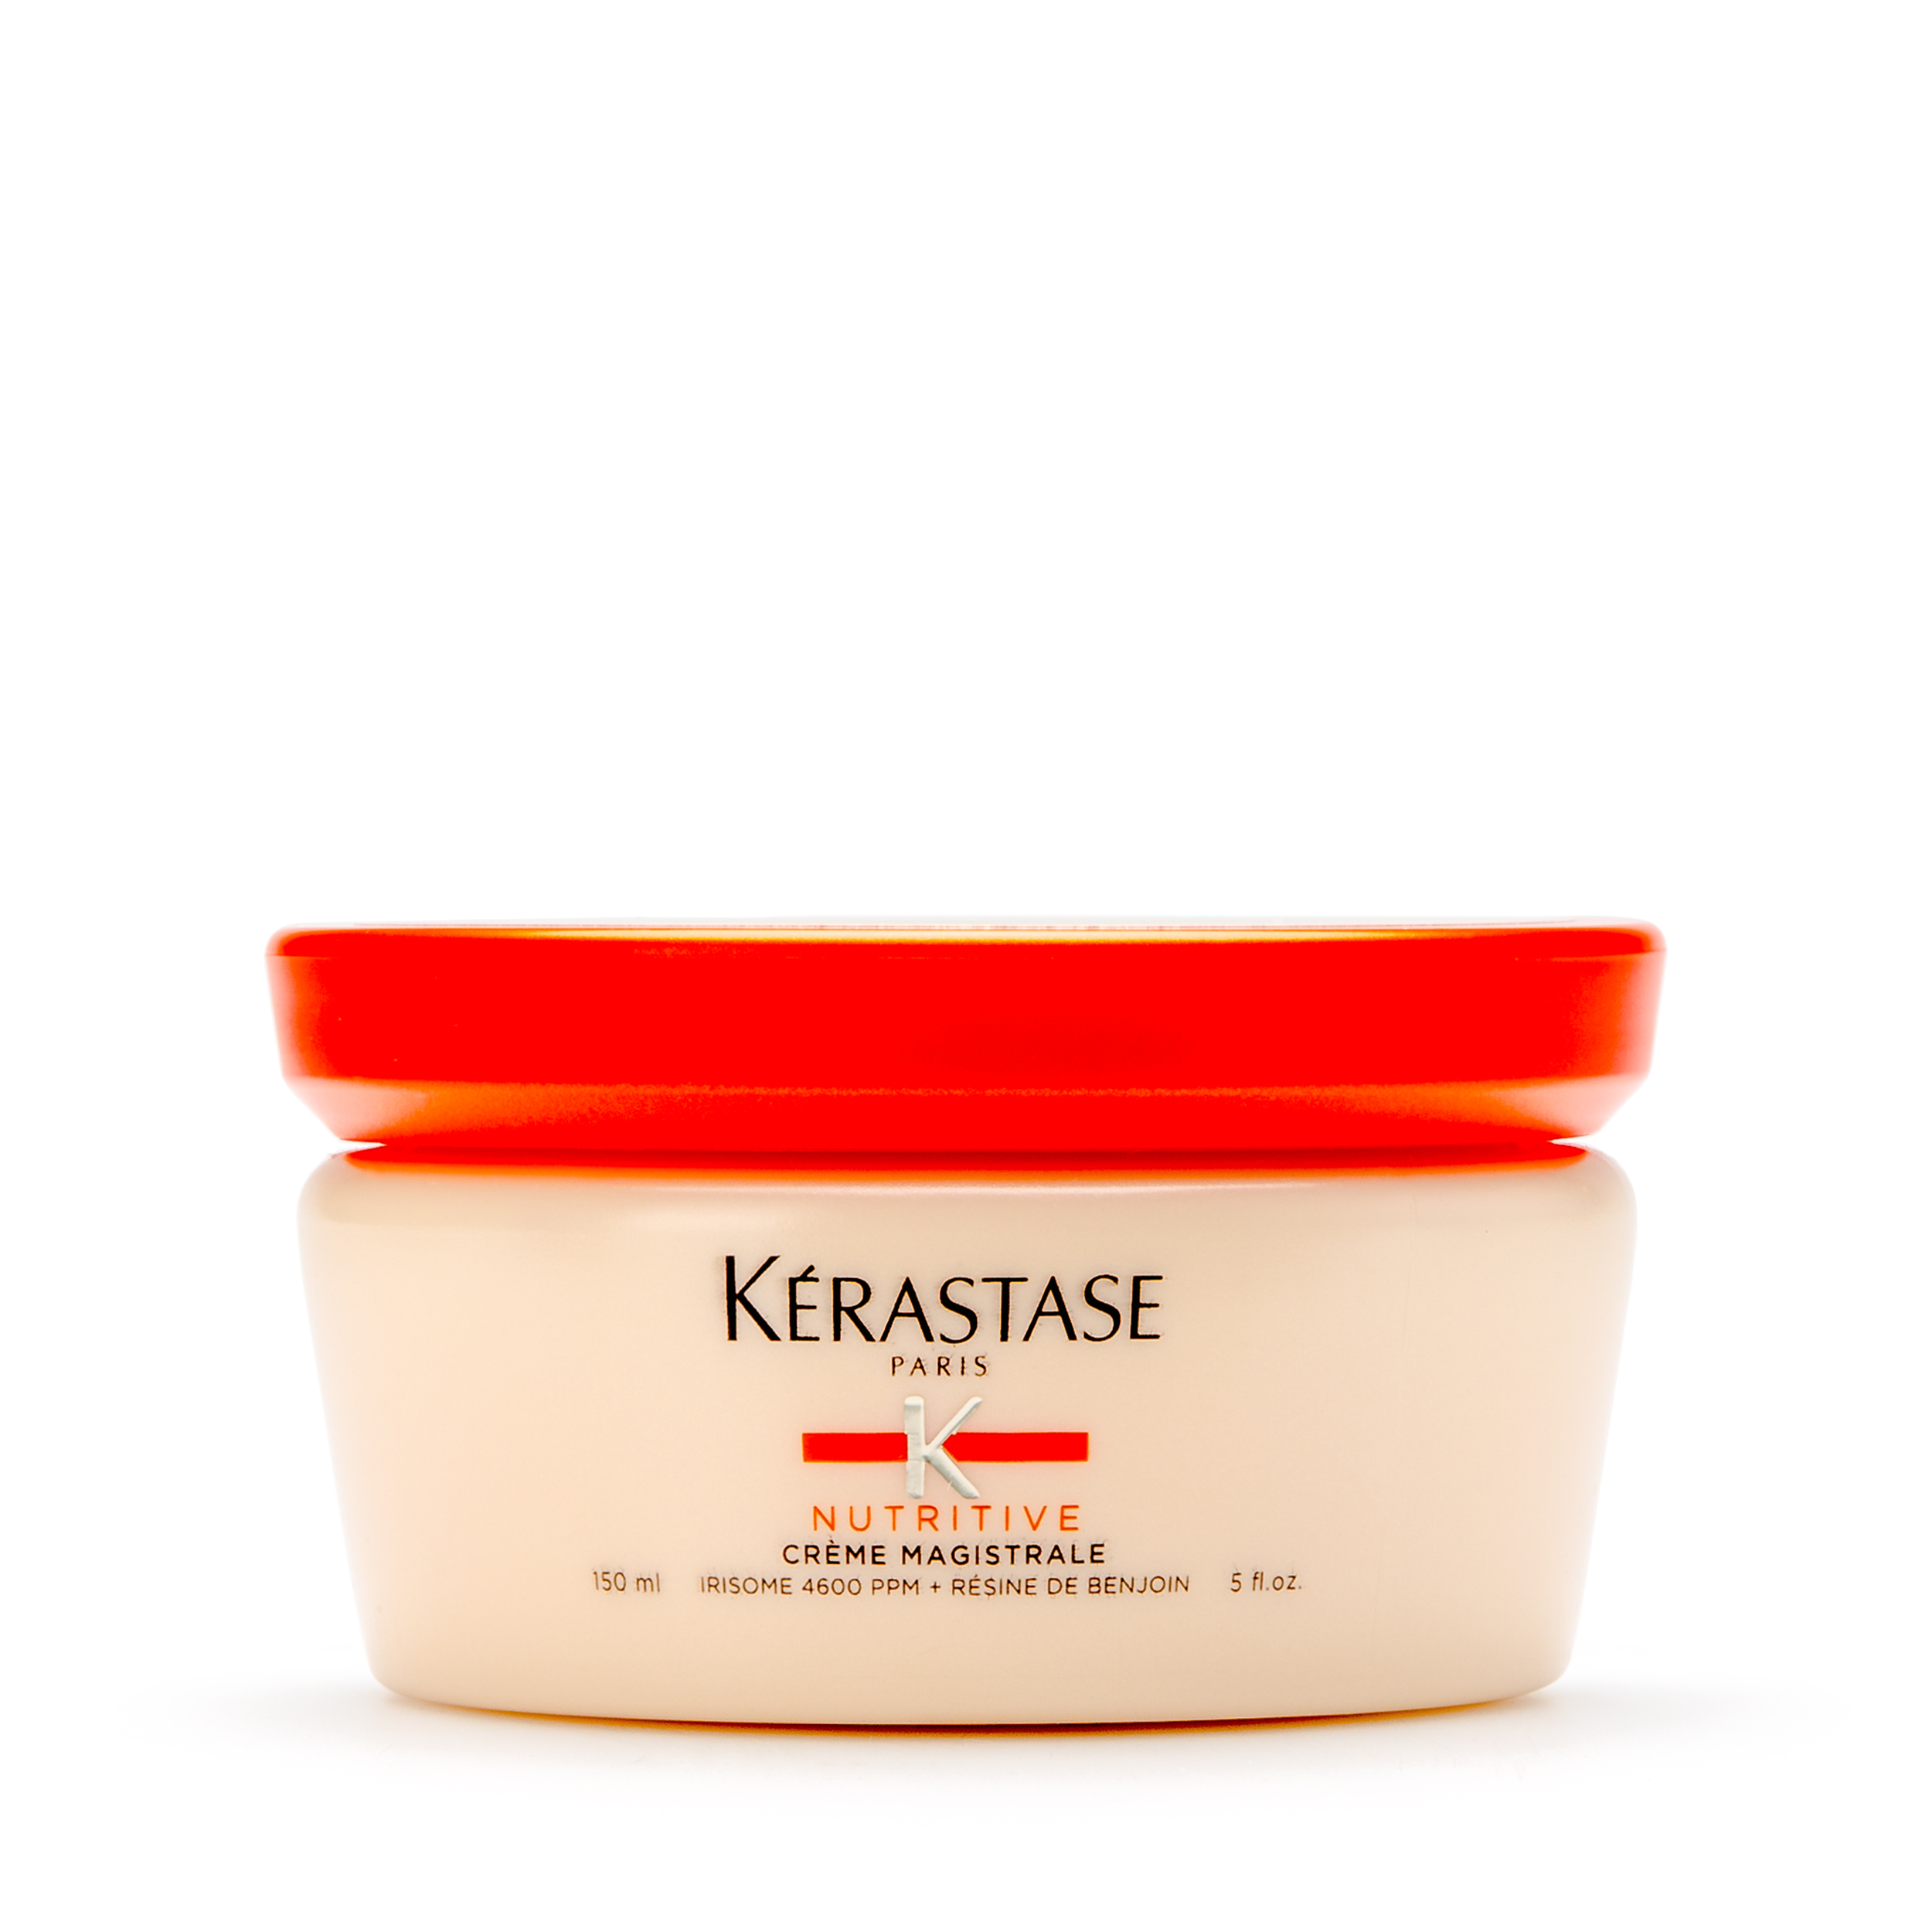 Kerastase Kerastase Несмываемый питательный бальзам для очень сухих волос Nutritive Creme Magistral 150 мл